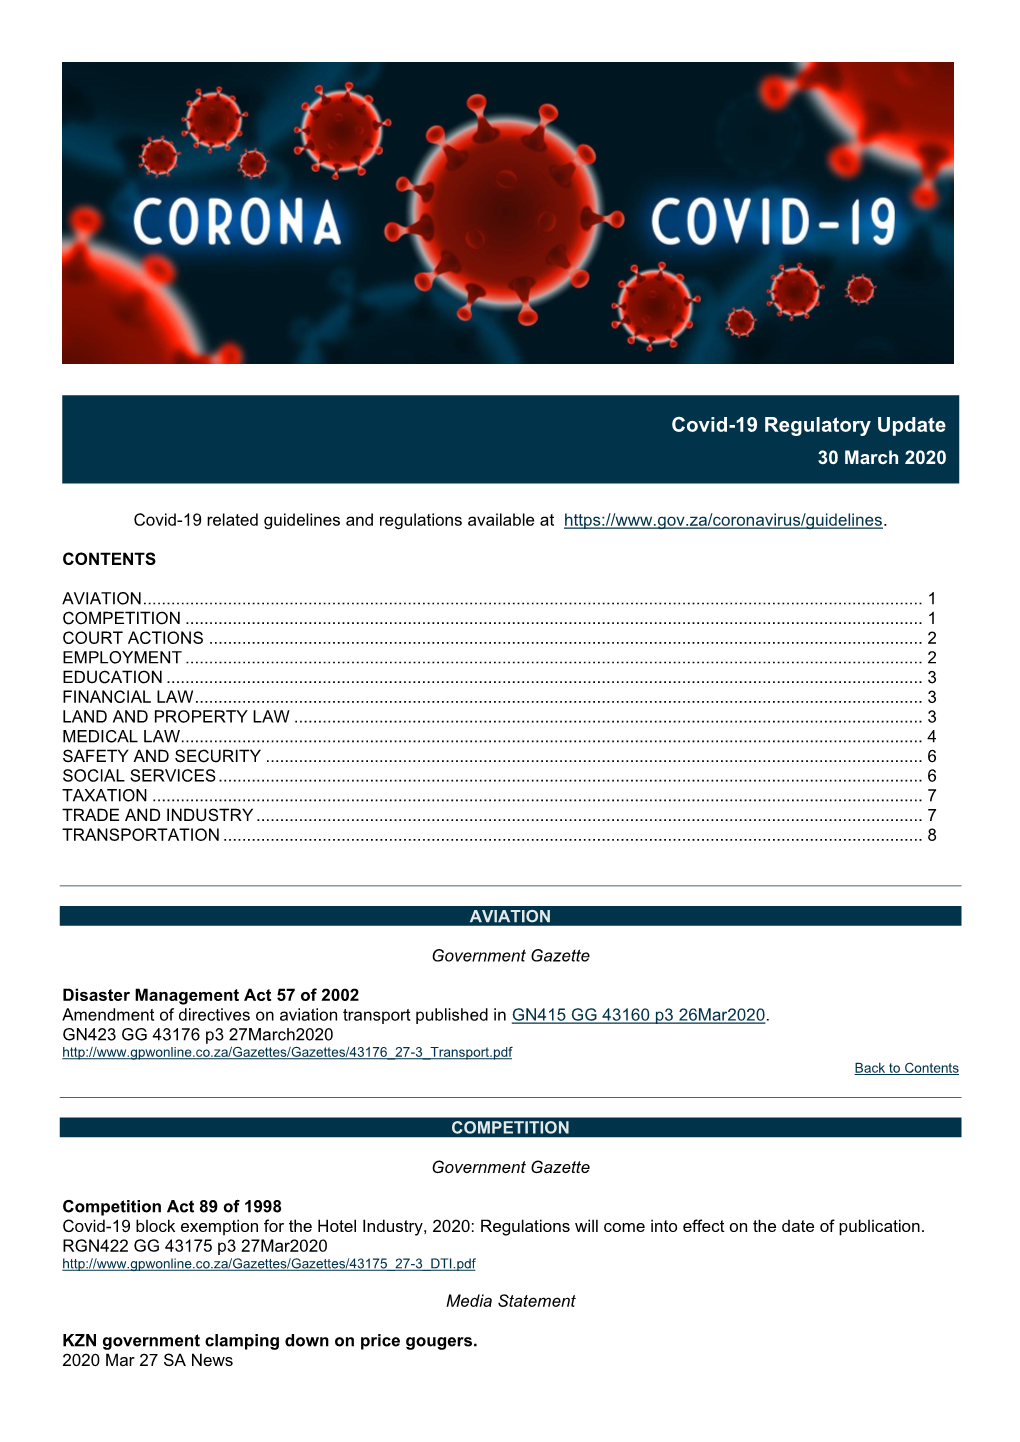 Covid-19 Regulatory Update 30Mar2020